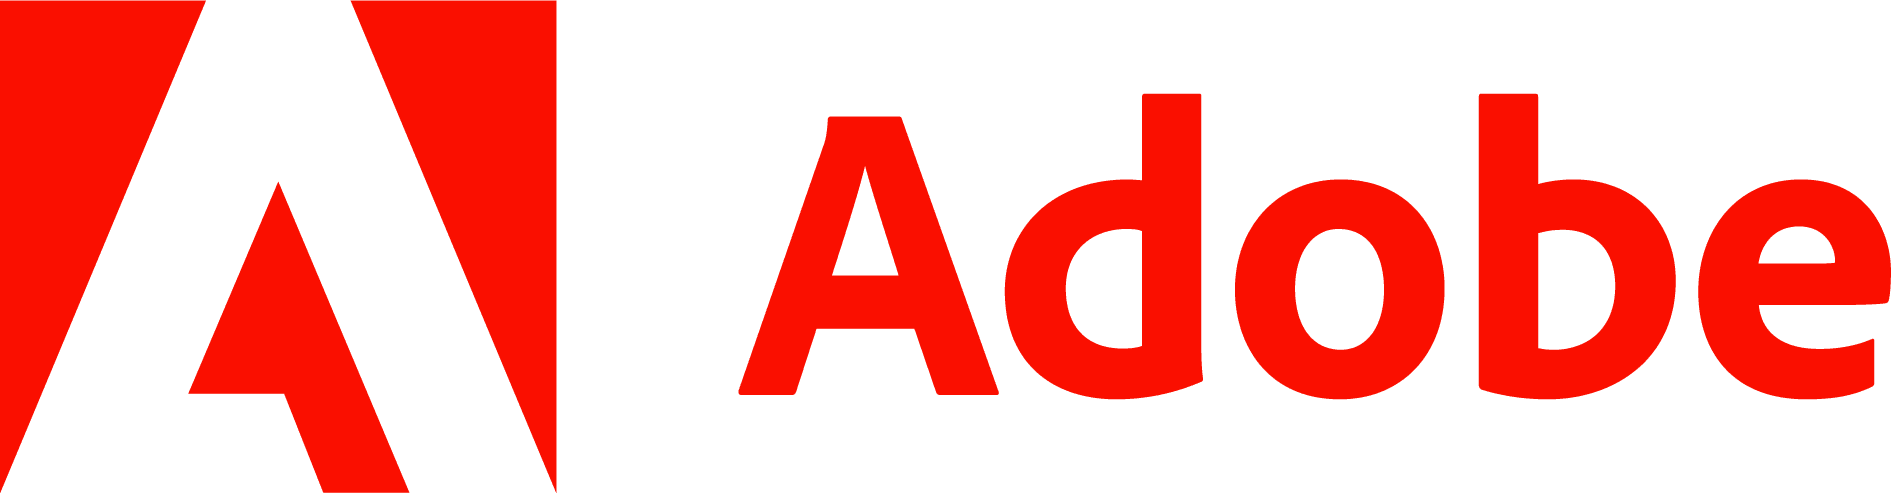 Adobe_logo_PNG6